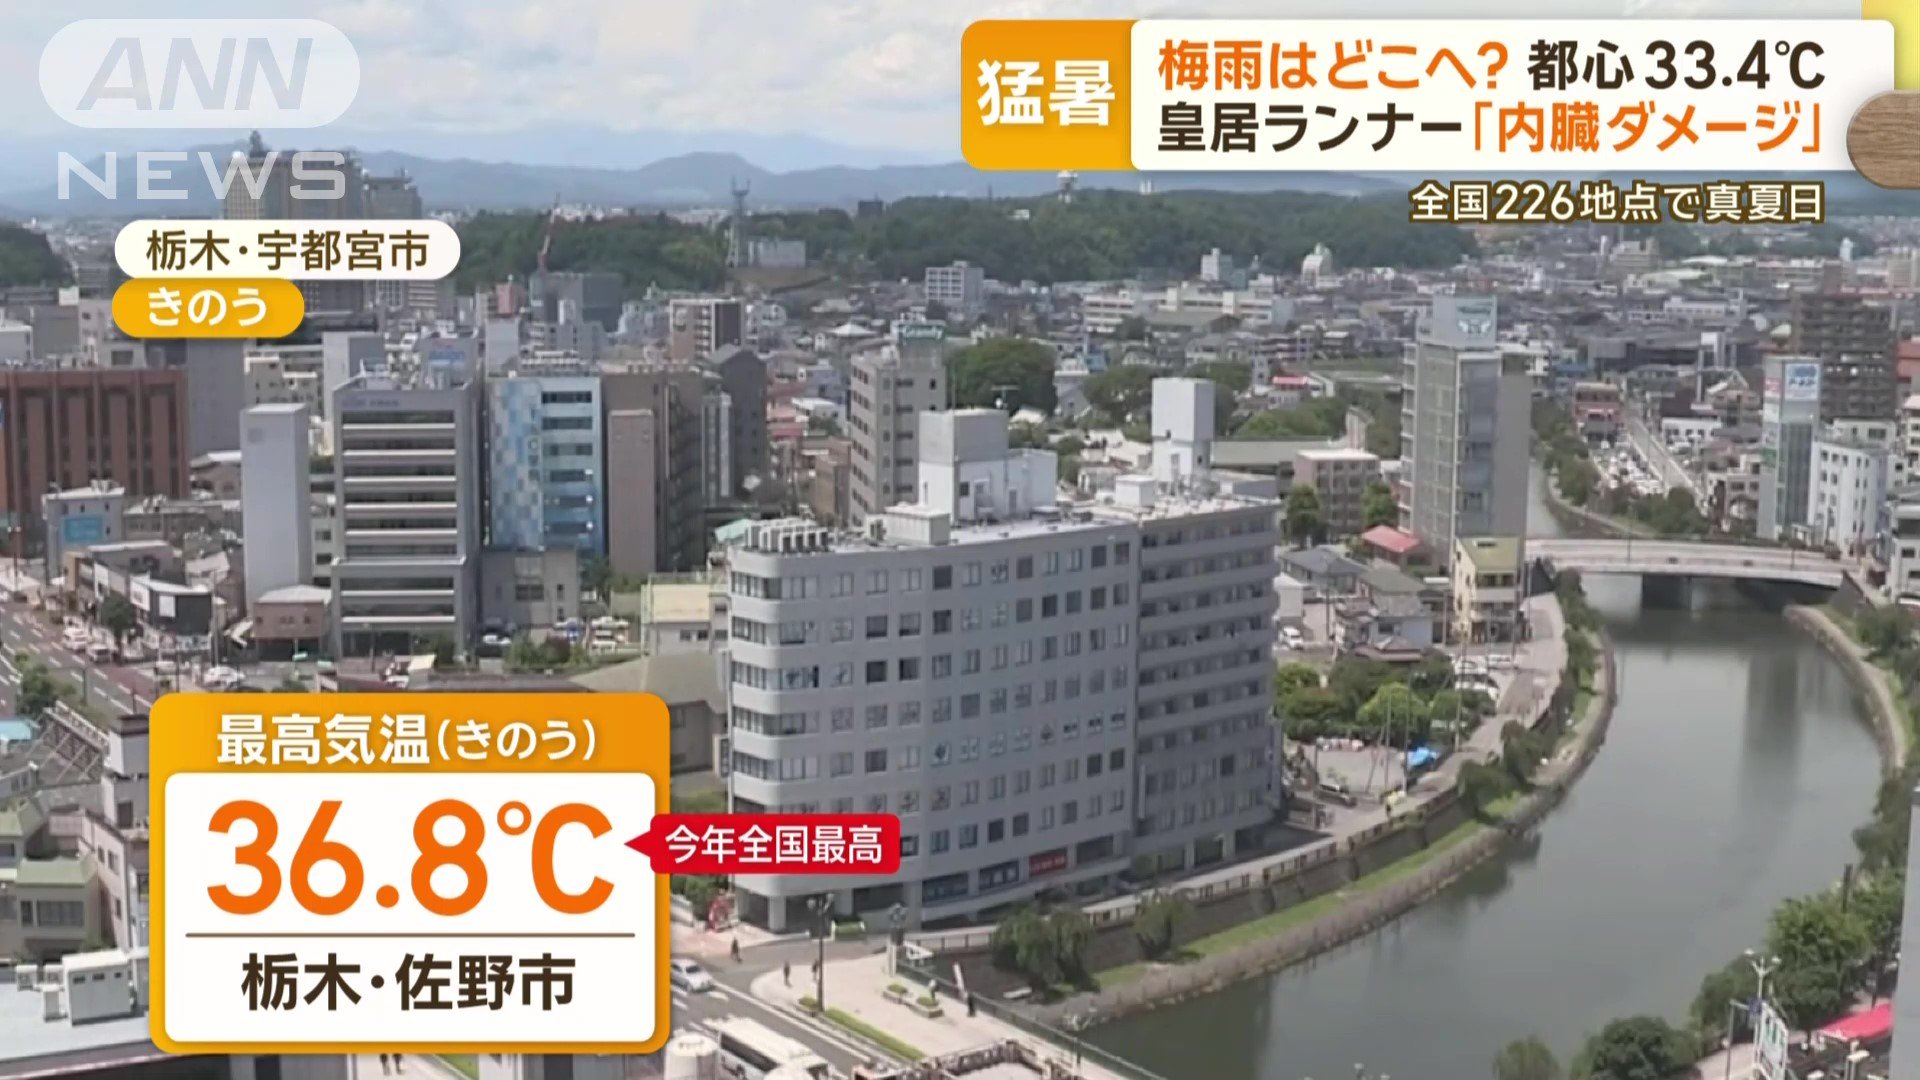 栃木県佐野市で今年の全国最高気温を更新